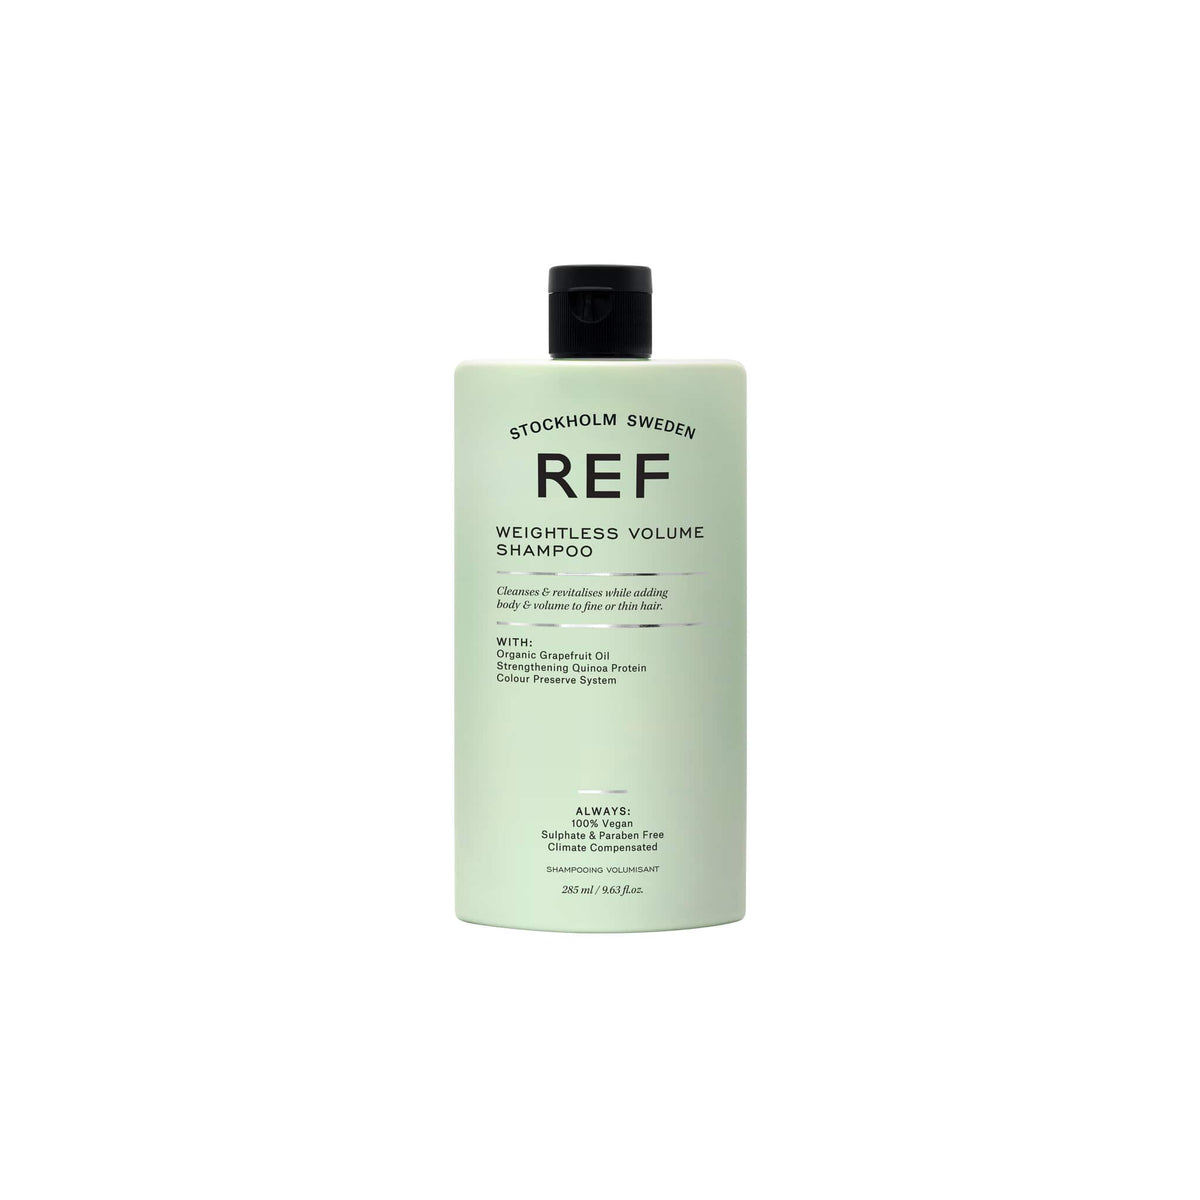 REF. Weightless Volume Shampoo 285ml